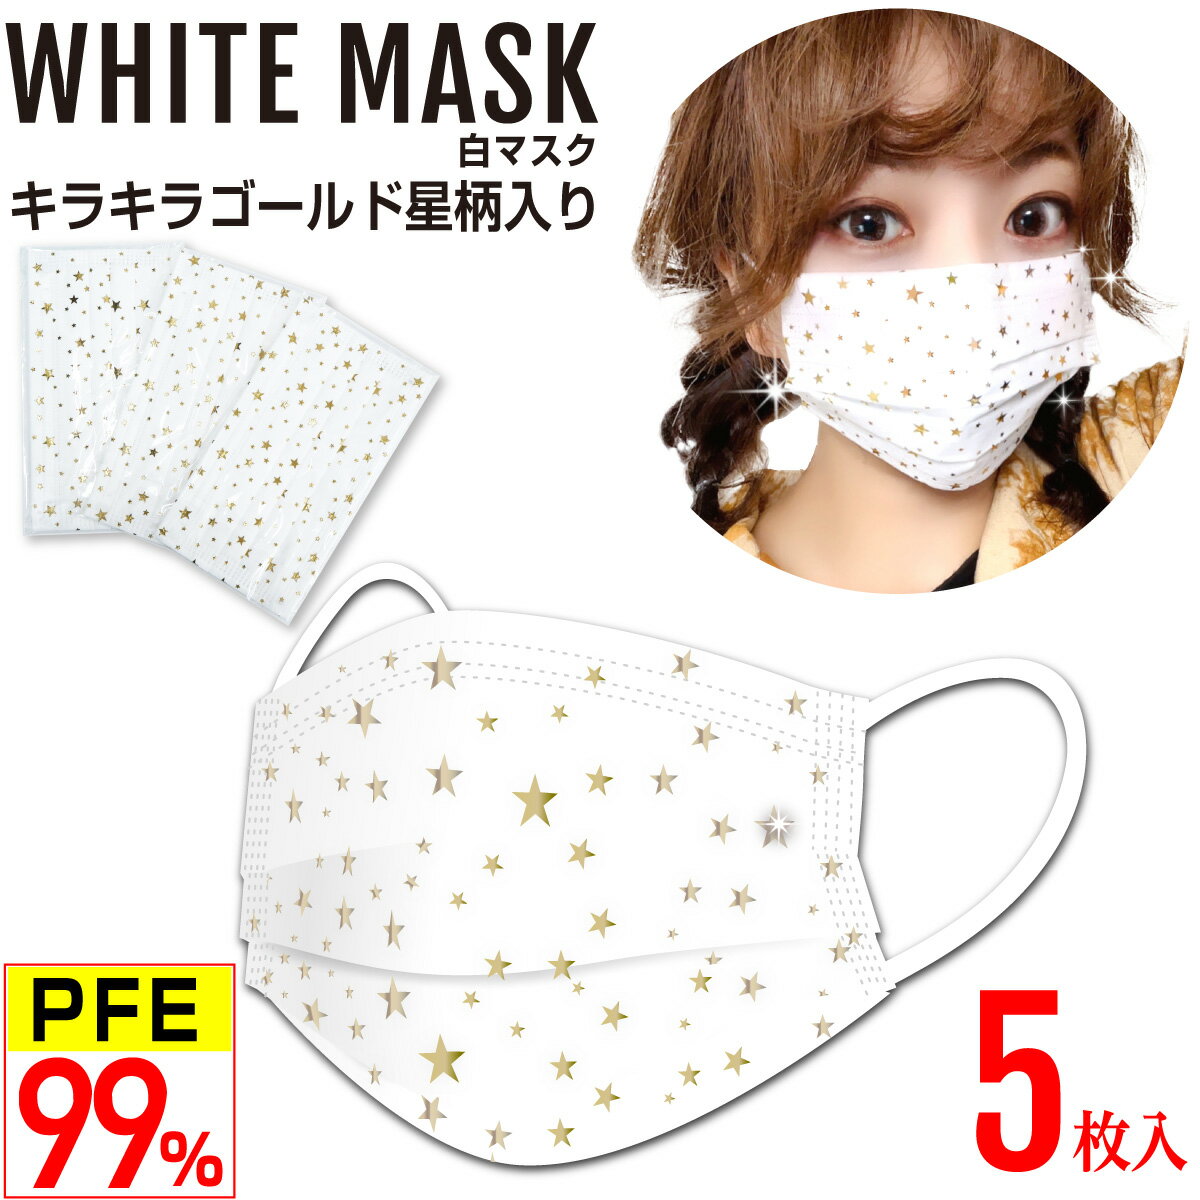 星柄 白マスク キラキラ金(ゴールド)  不織布マスク 4層 PFE99%以上 PM2.5対応 高性能フィルター 個別包装 5枚入 男女兼用 使い捨て おしゃれマスク